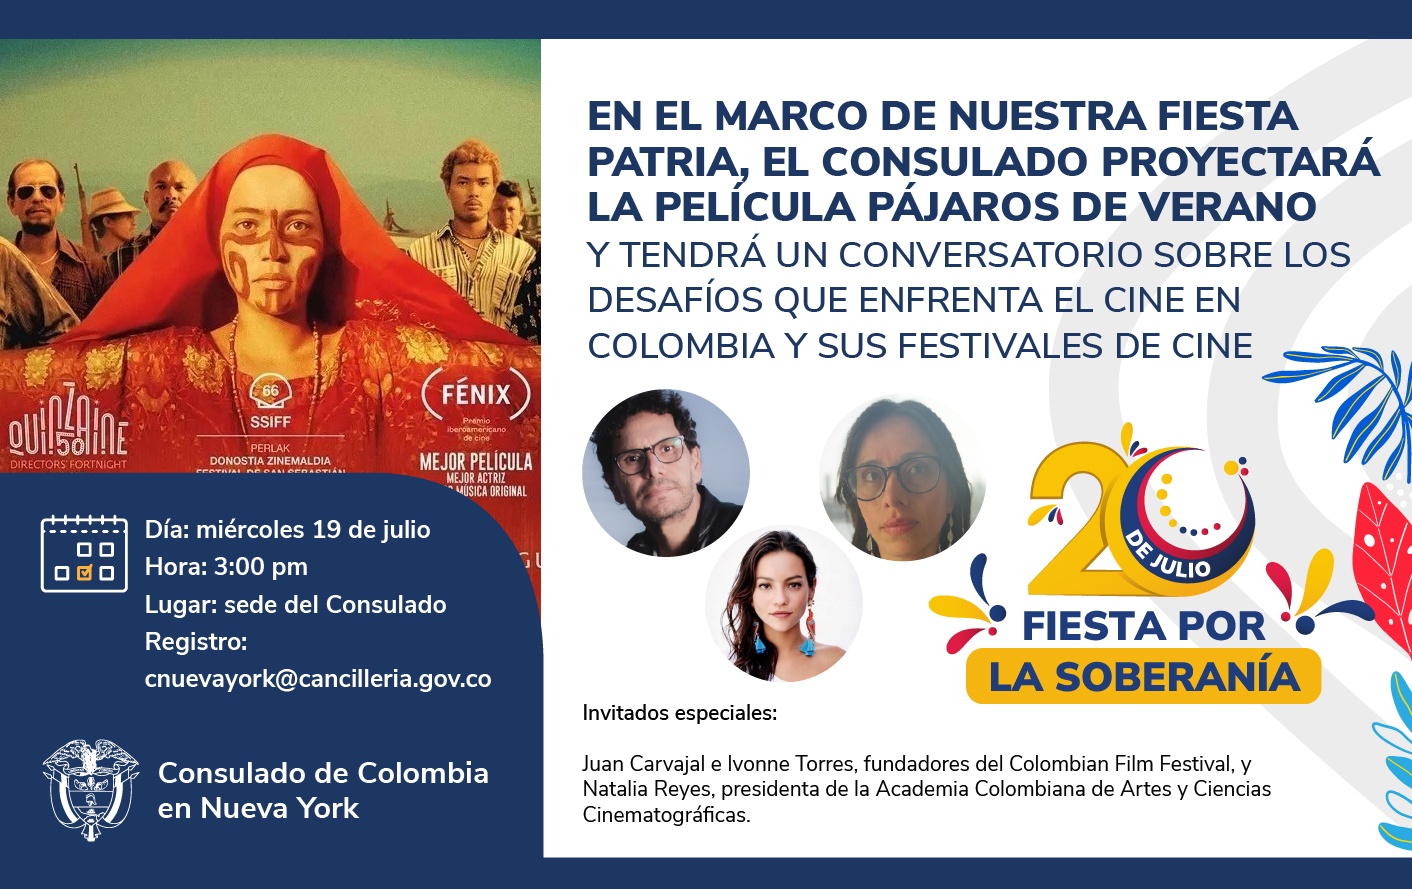 Consulado en Nueva York ha preparado una serie de actividades para honrar la Fiesta Nacional de Colombia